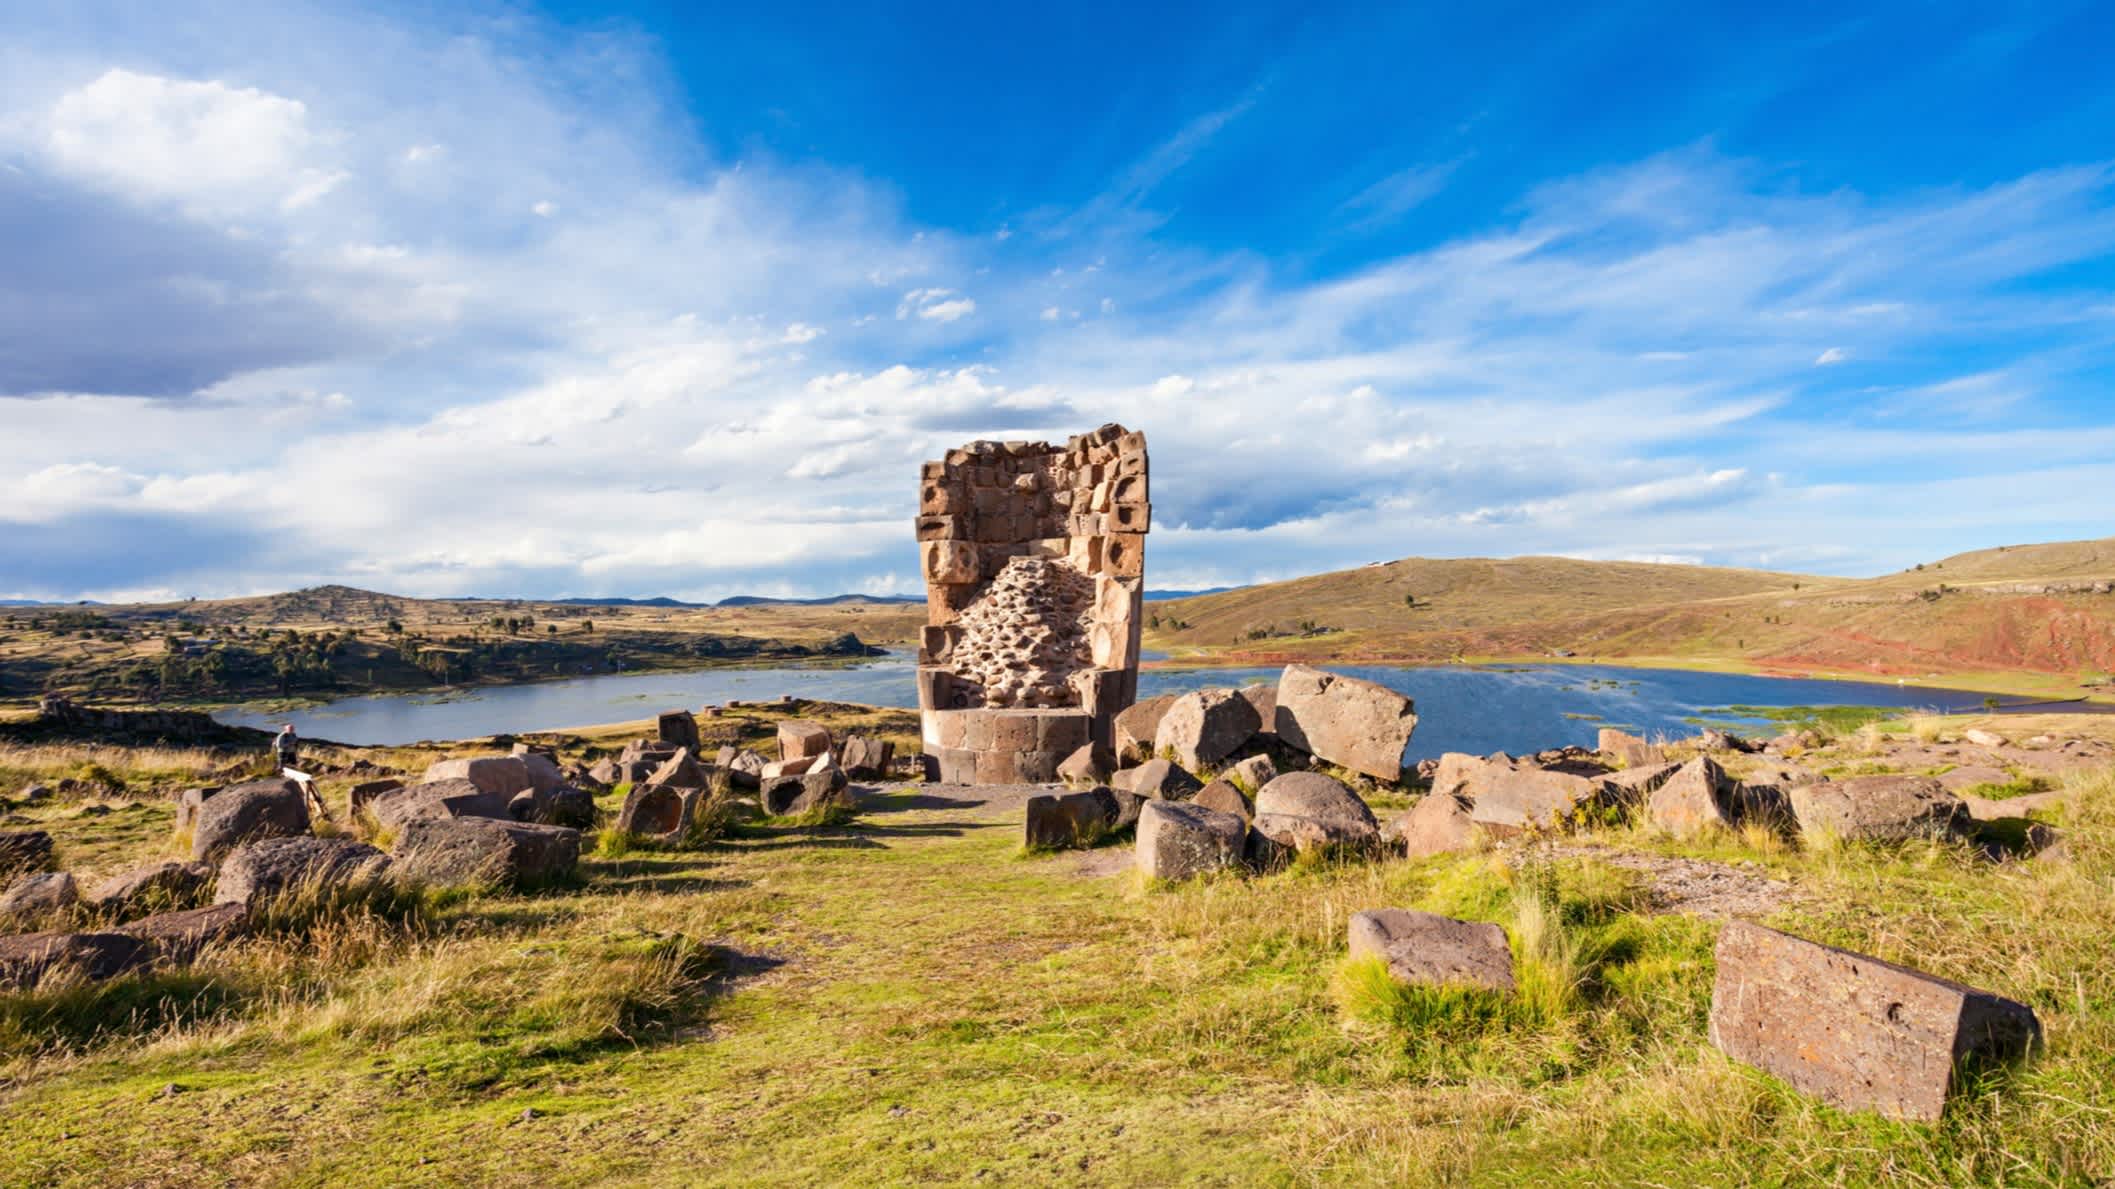 Sillustani ist eine vorinkanische Begräbnisstätte am Ufer des Umayo-Sees in der Nähe von Puno in Peru